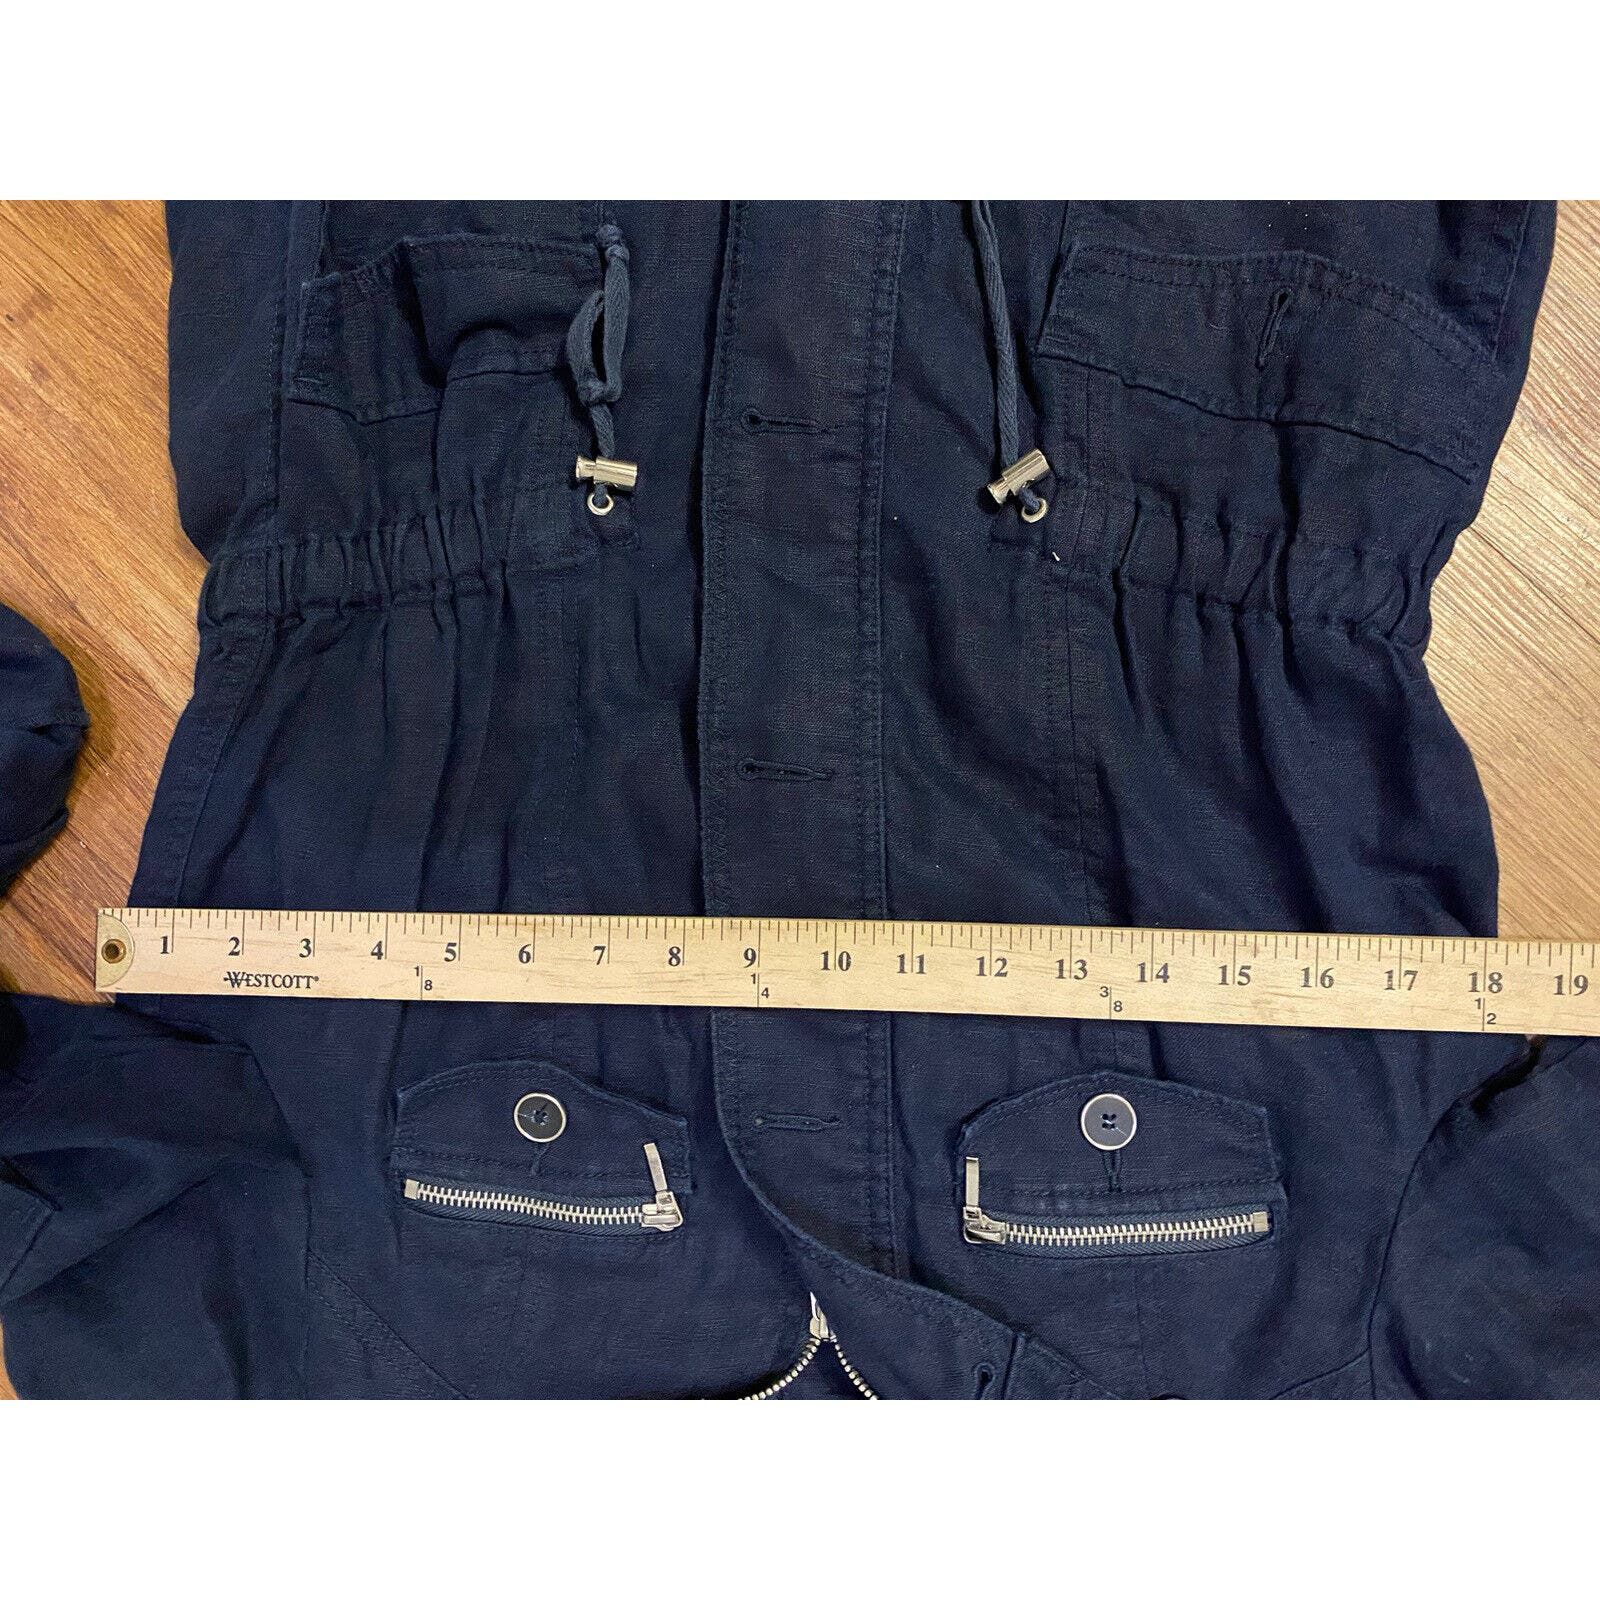 Inc INC Concepts Jacket Women Sz Med Button Up Coat Blue Linen Size M / US 6-8 / IT 42-44 - 8 Thumbnail